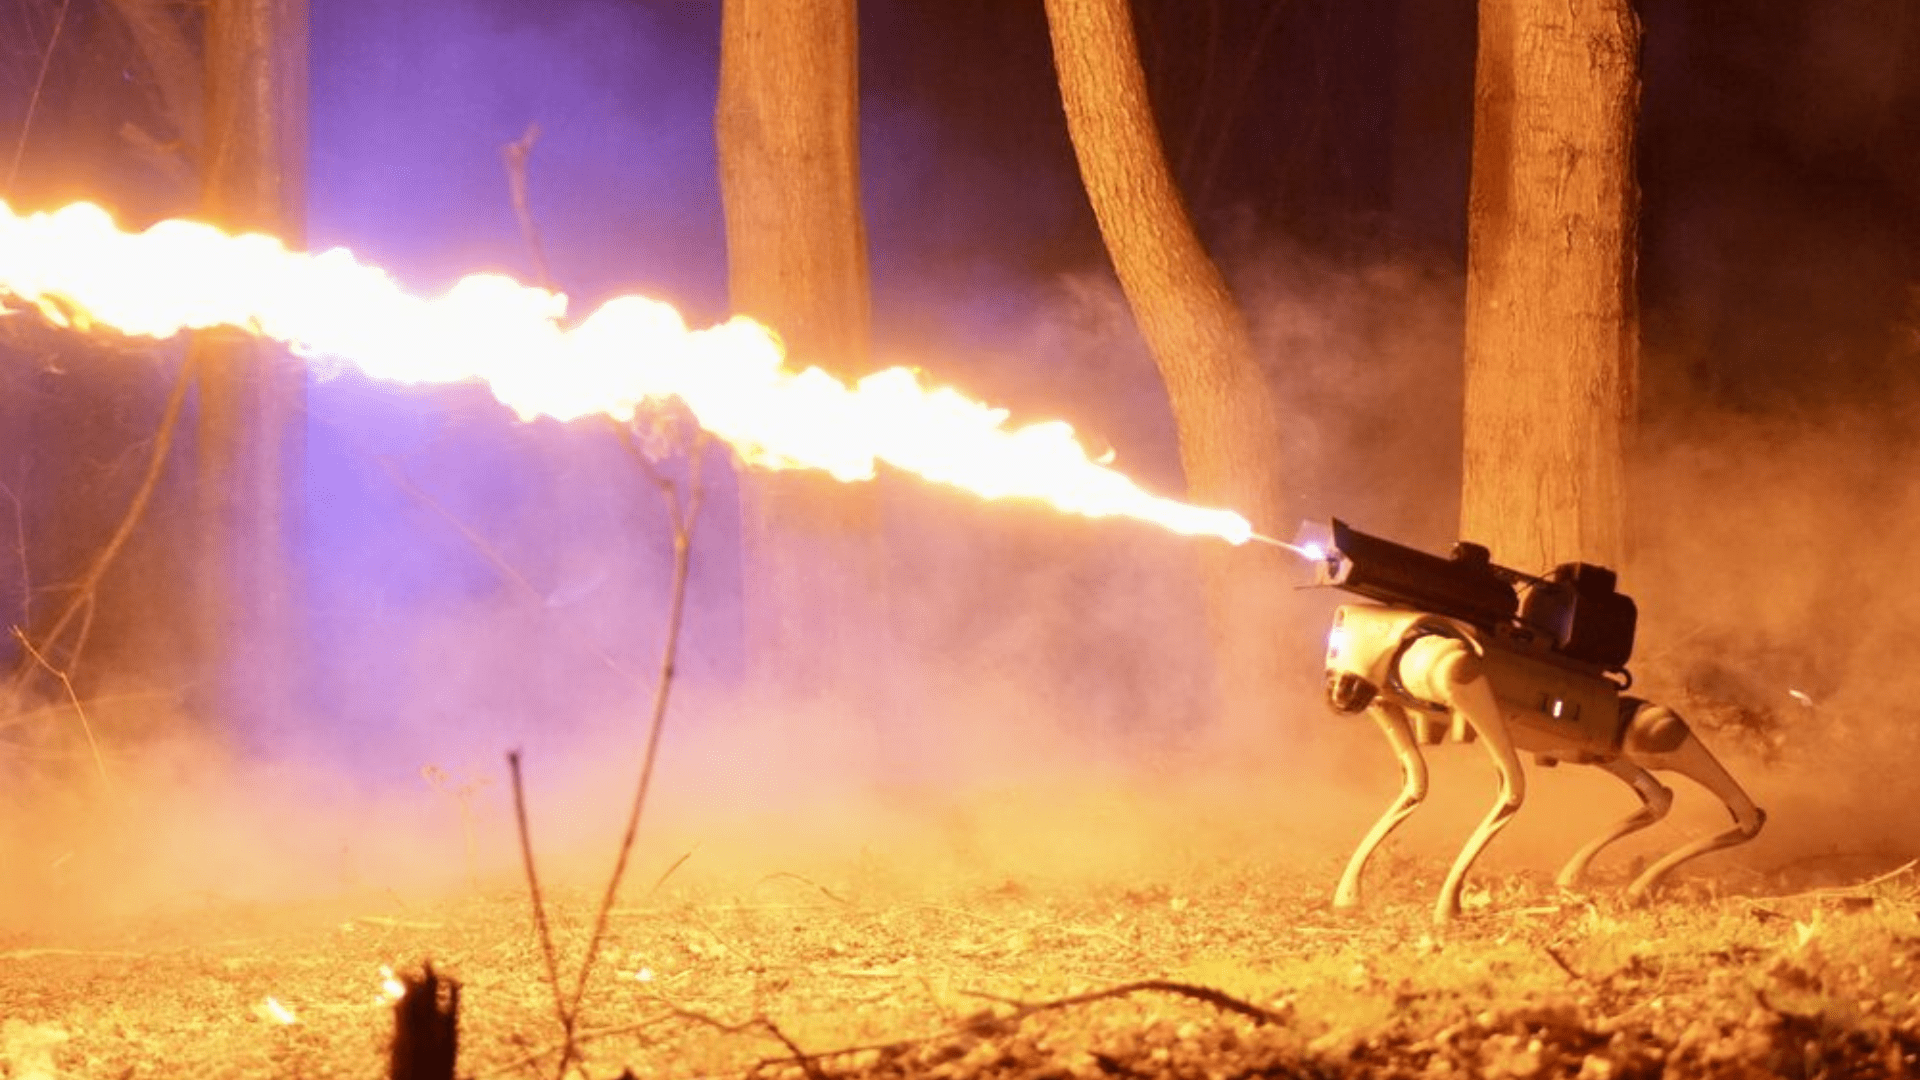 Thermonator shooting flames